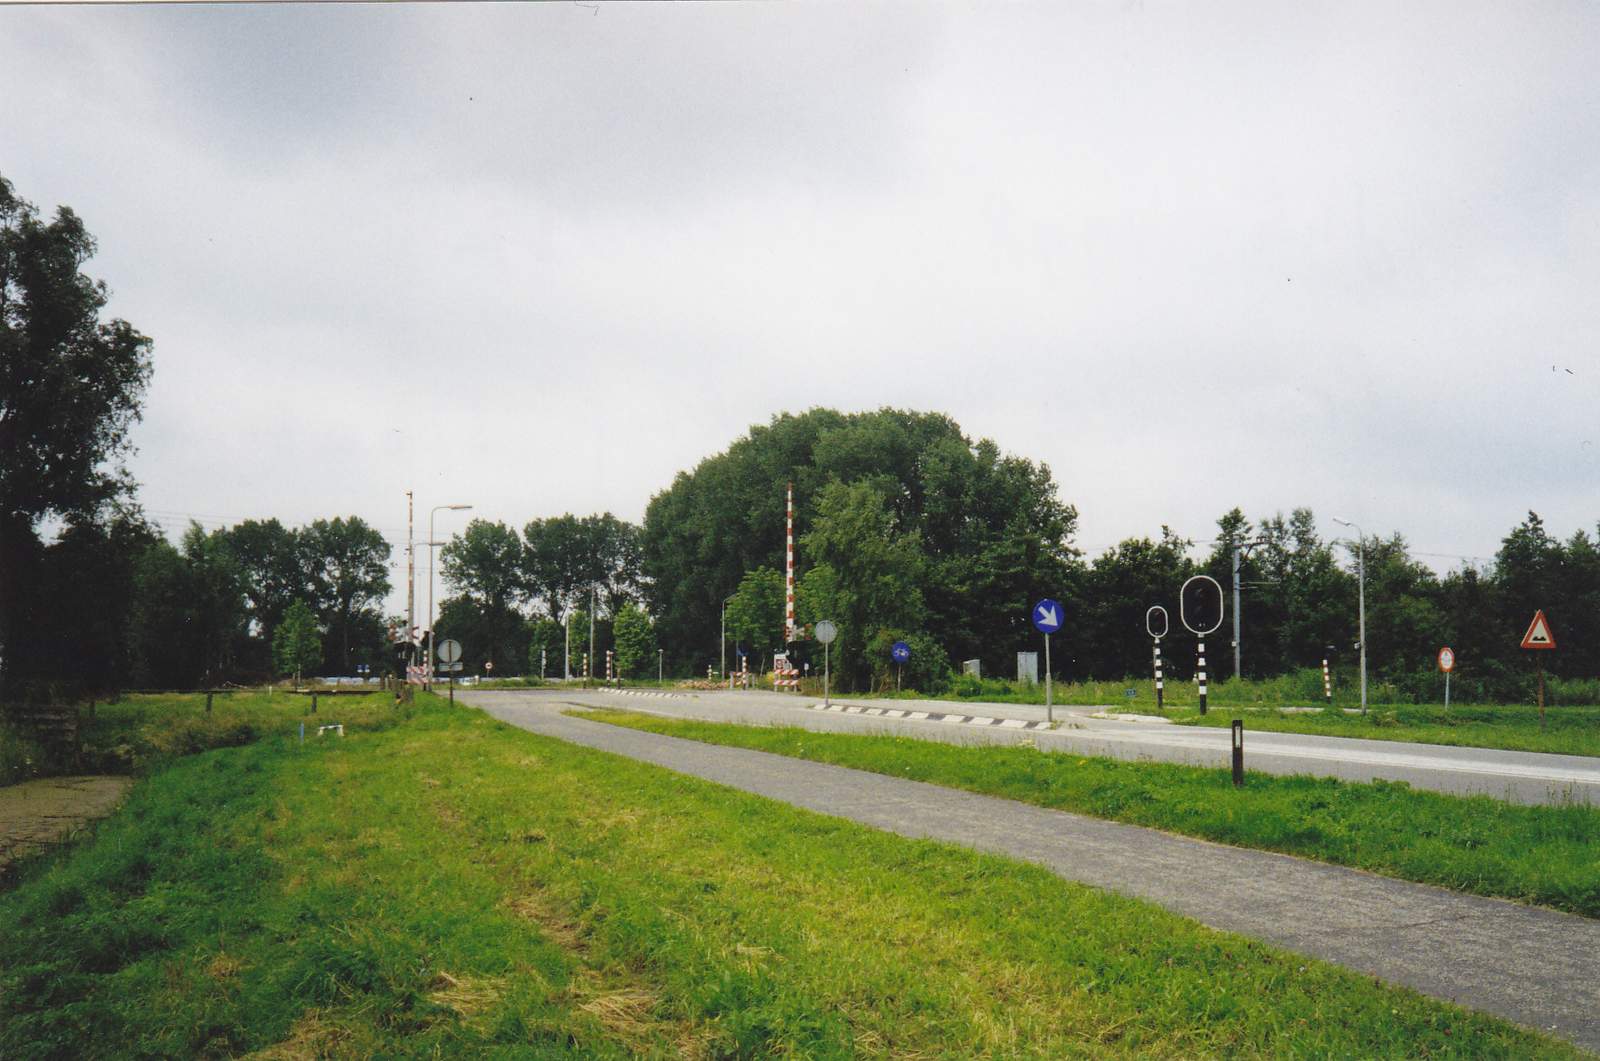 025-155a - Stationsweg - Prov.weg N 482.jpg